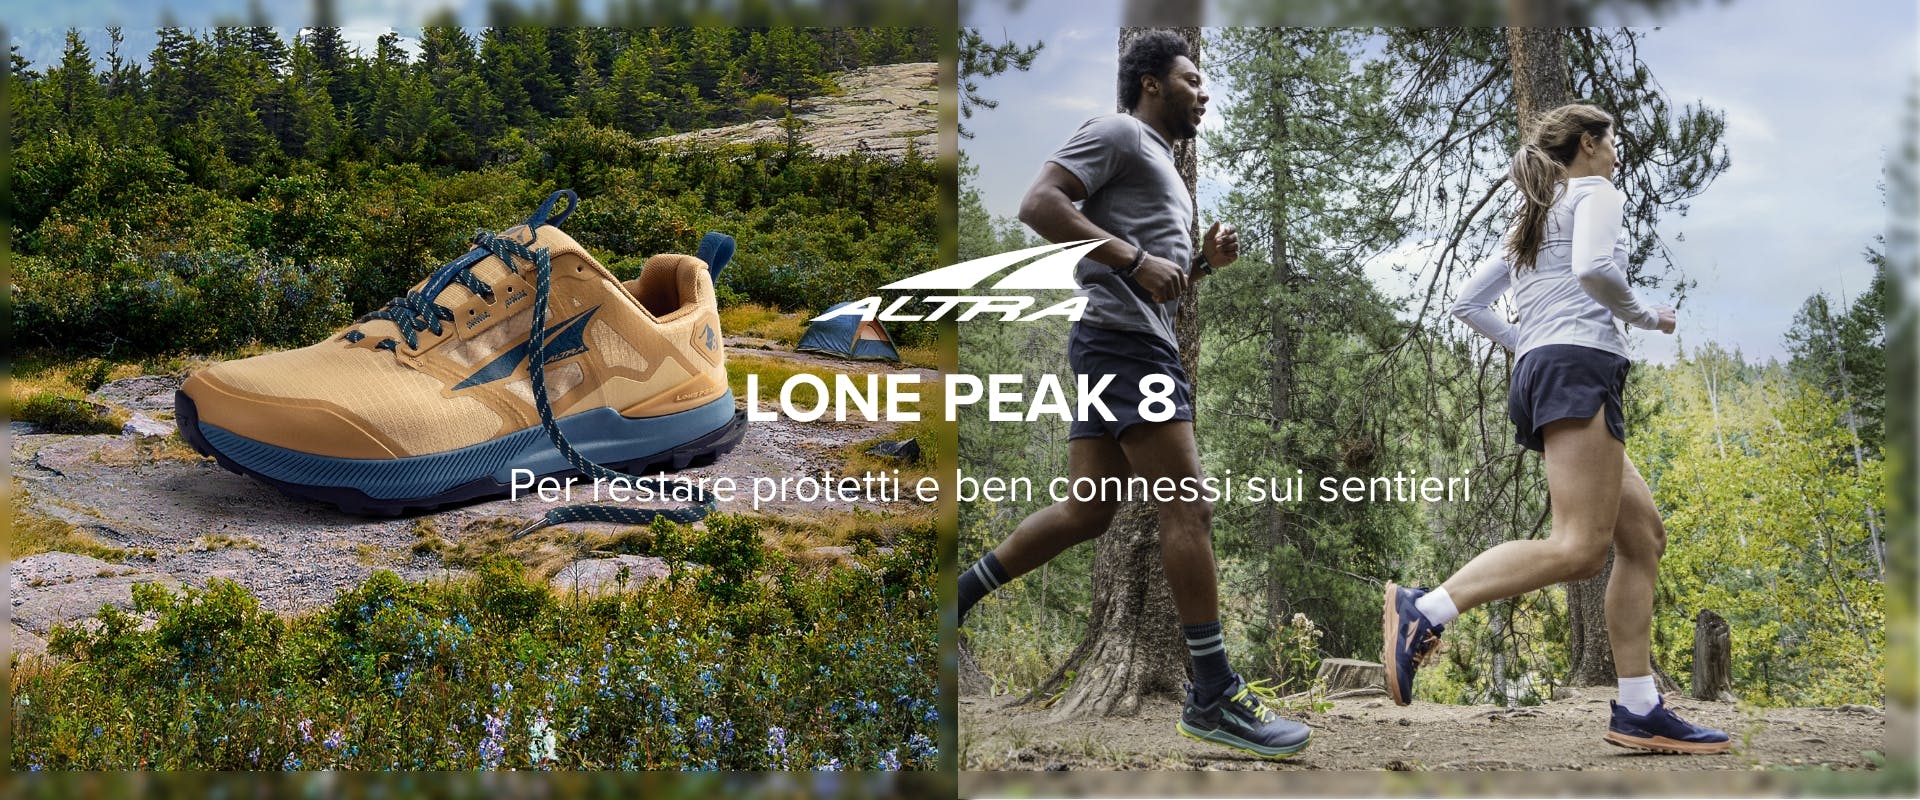 Lone Peak 8 